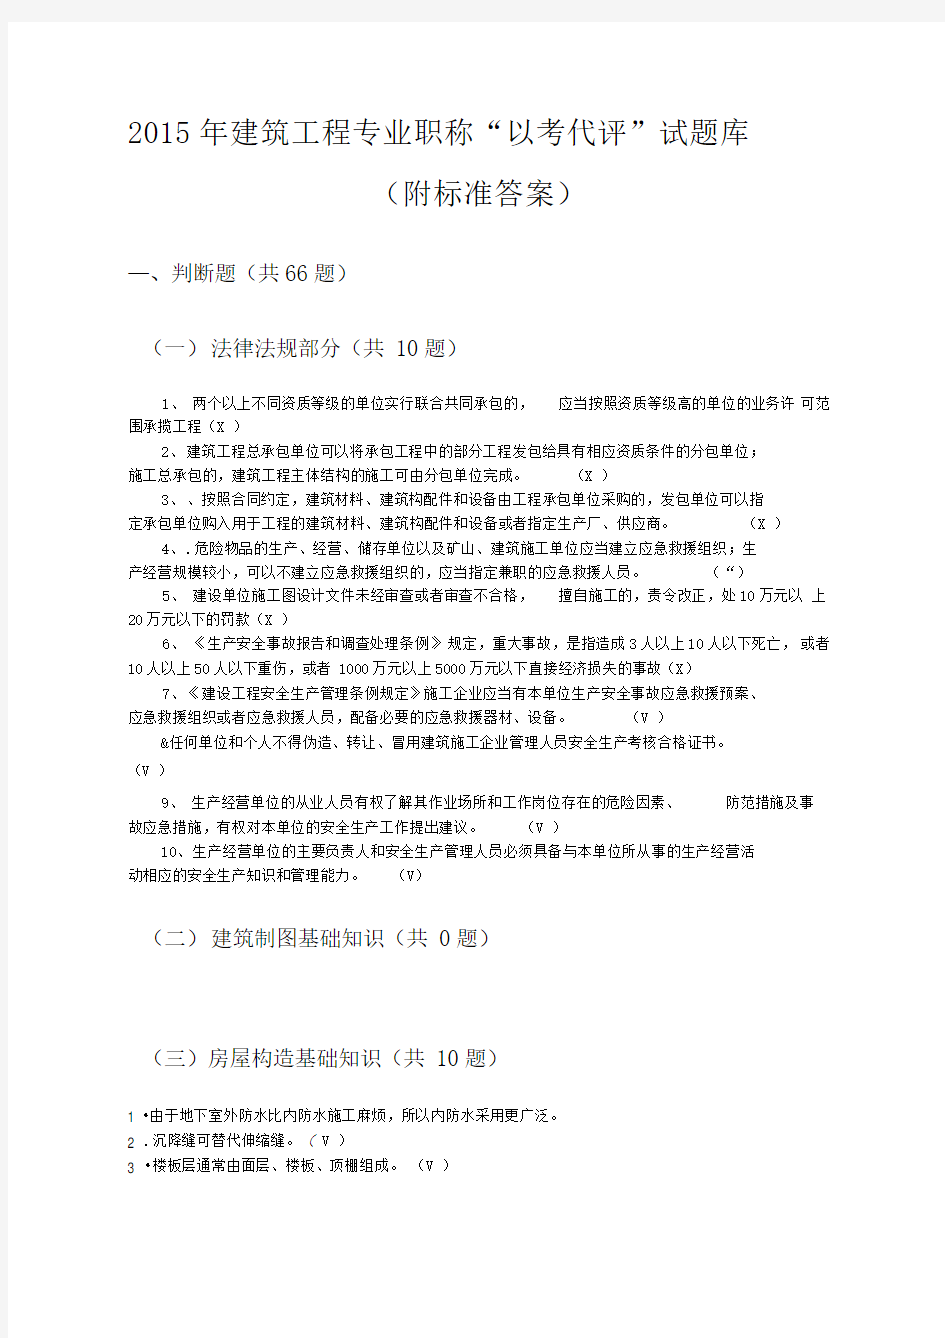 贵州省建筑工程中级工程师“以考代评”试题库-副本